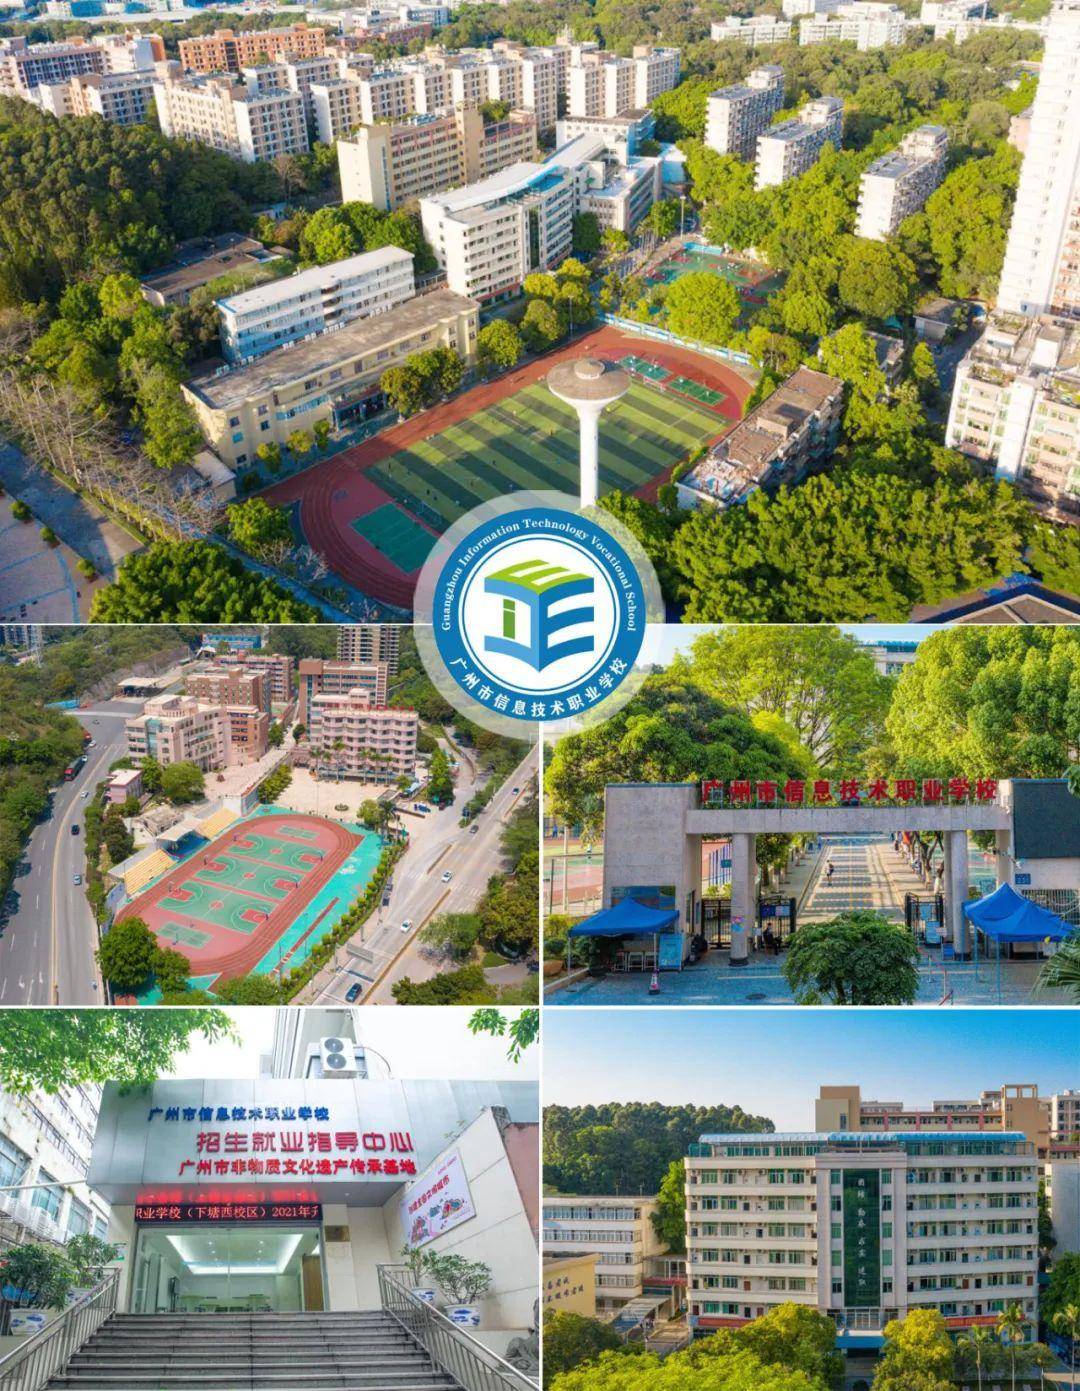 广州市信息技术职业学校04学校简介:学校由广州医药集团有限公司创建